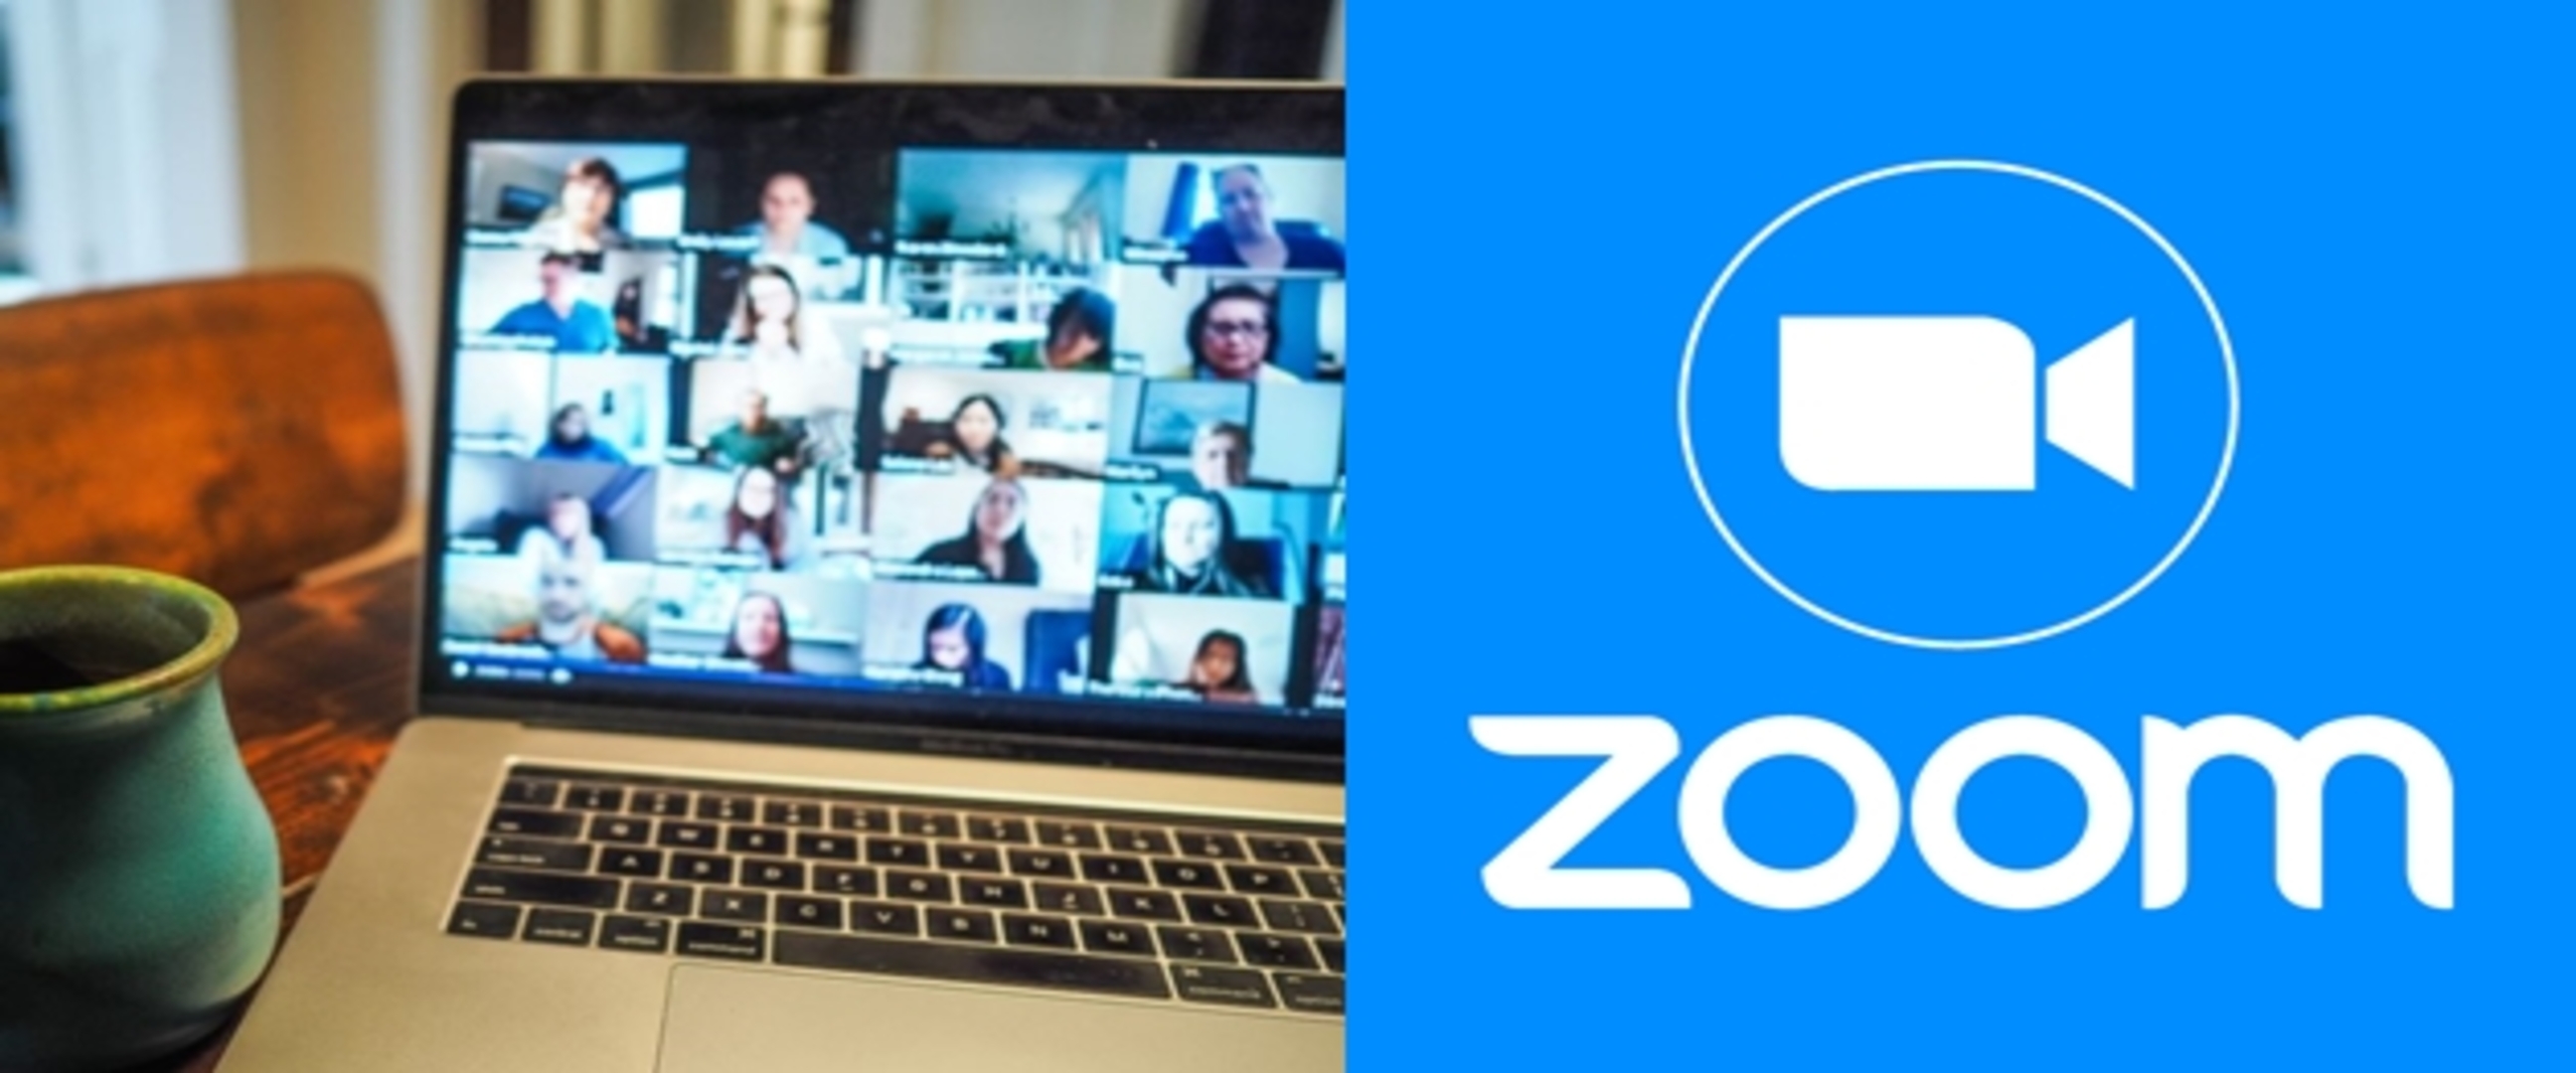 Cara pakai Zoom di laptop tanpa harus download, mudah dan antiribet